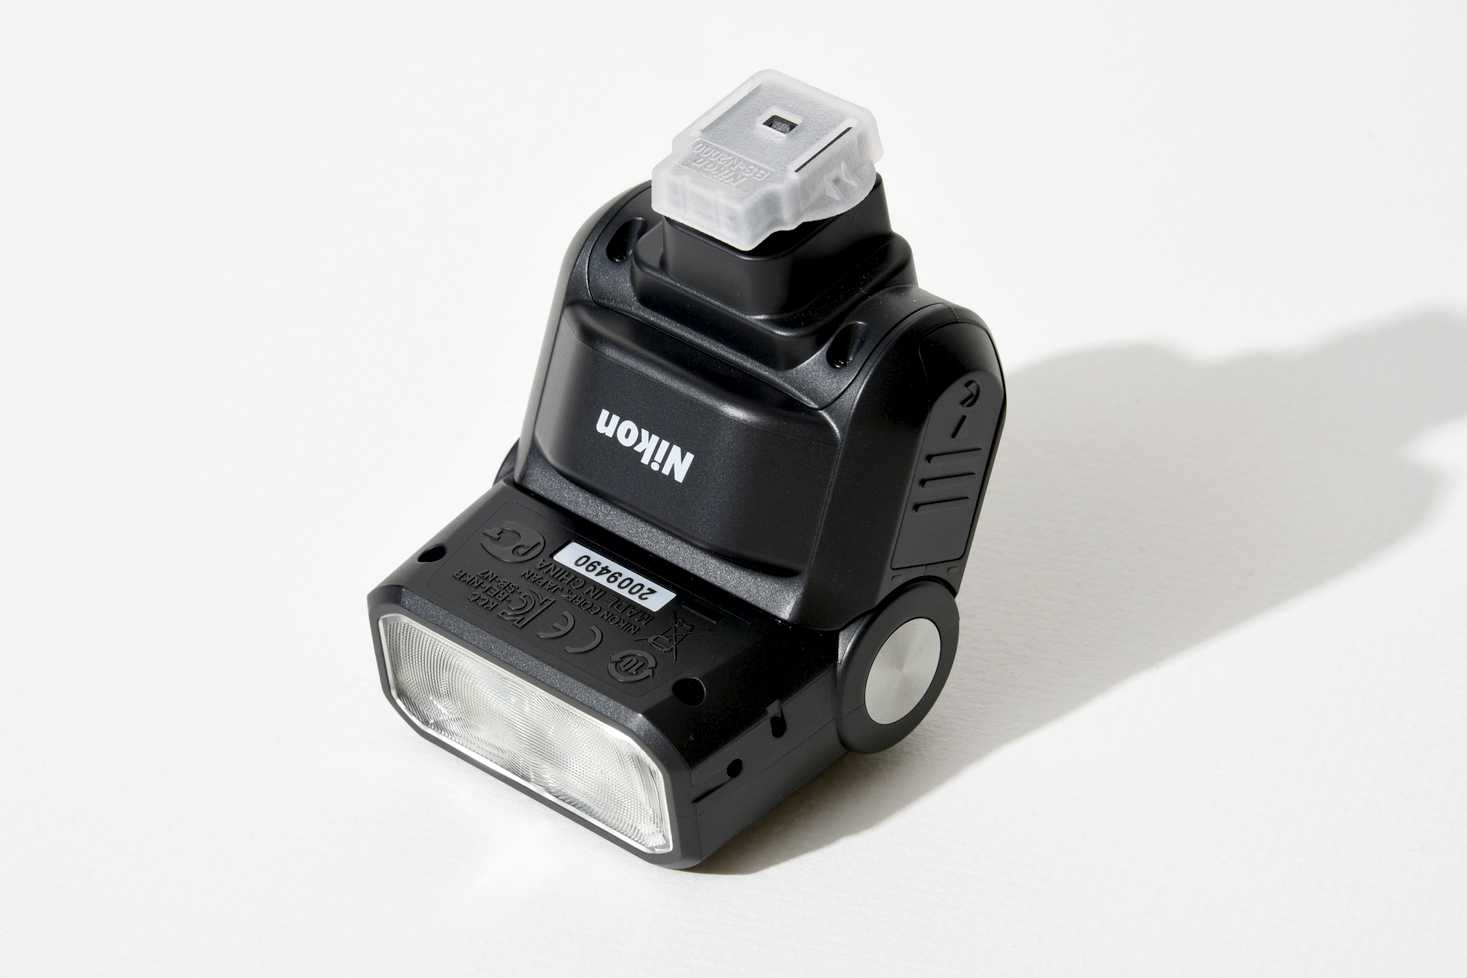 Фотовспышка Nikon Speedlight SB-N7 - подробные характеристики обзоры видео фото Цены в интернет-магазинах где можно купить фотовспышку Nikon Speedlight SB-N7